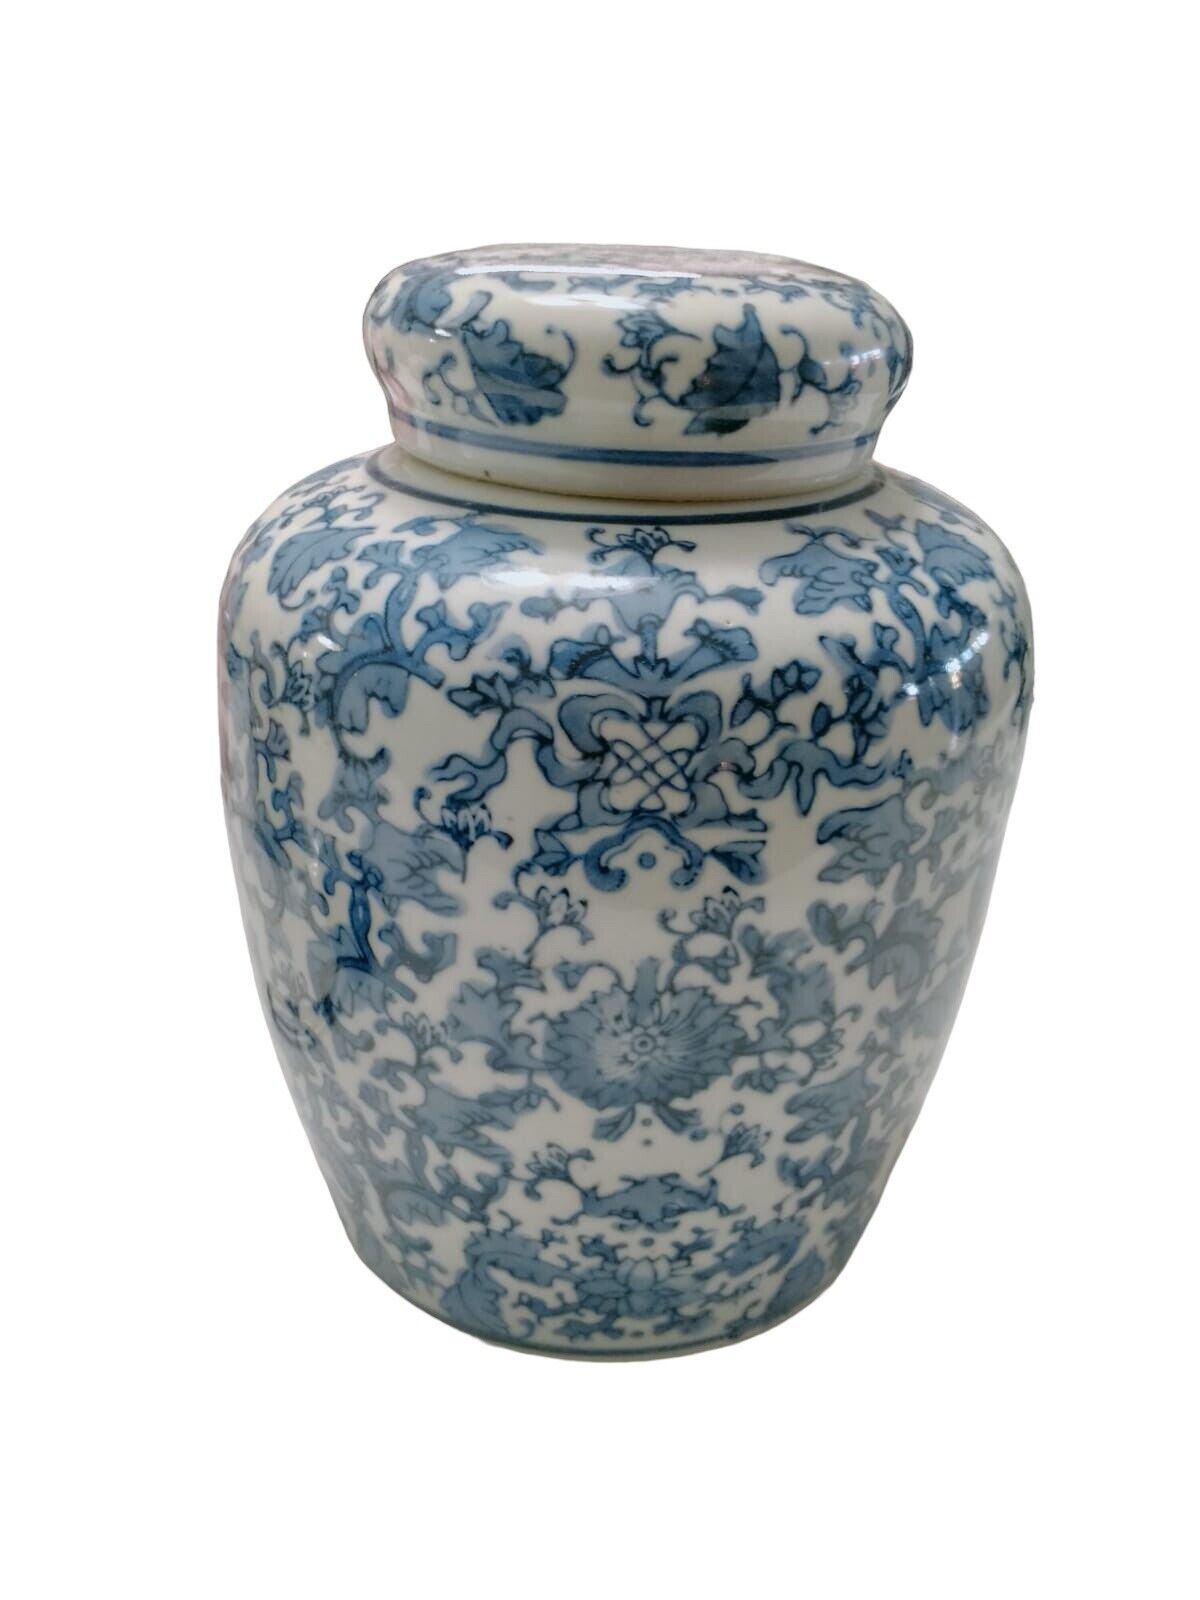 Vintage Large Ginger Jar Vase - Asian - Unknown - Nice